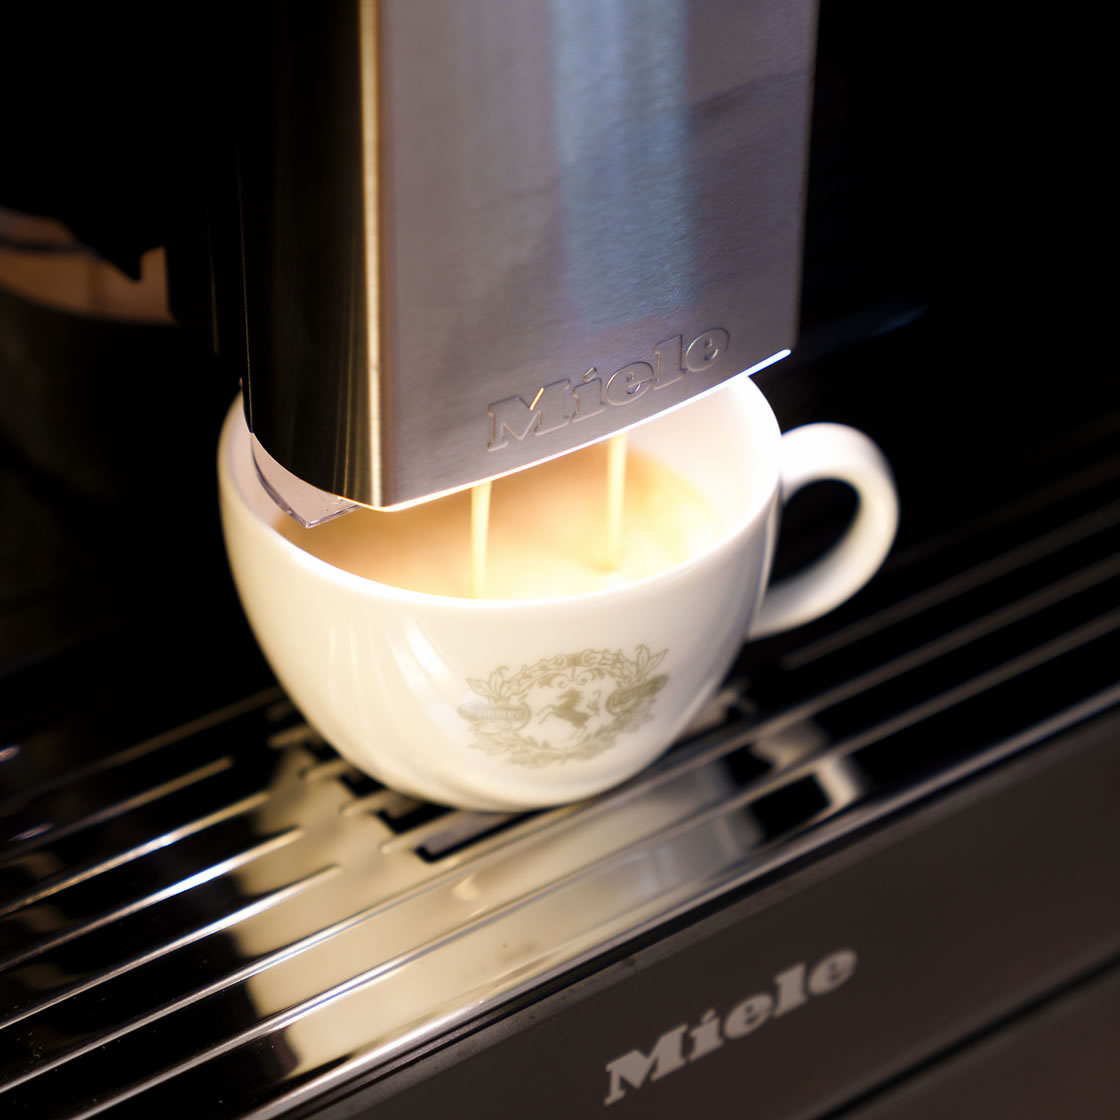 Mieleのビルトインコーヒーマシンは「CupSensor」を搭載